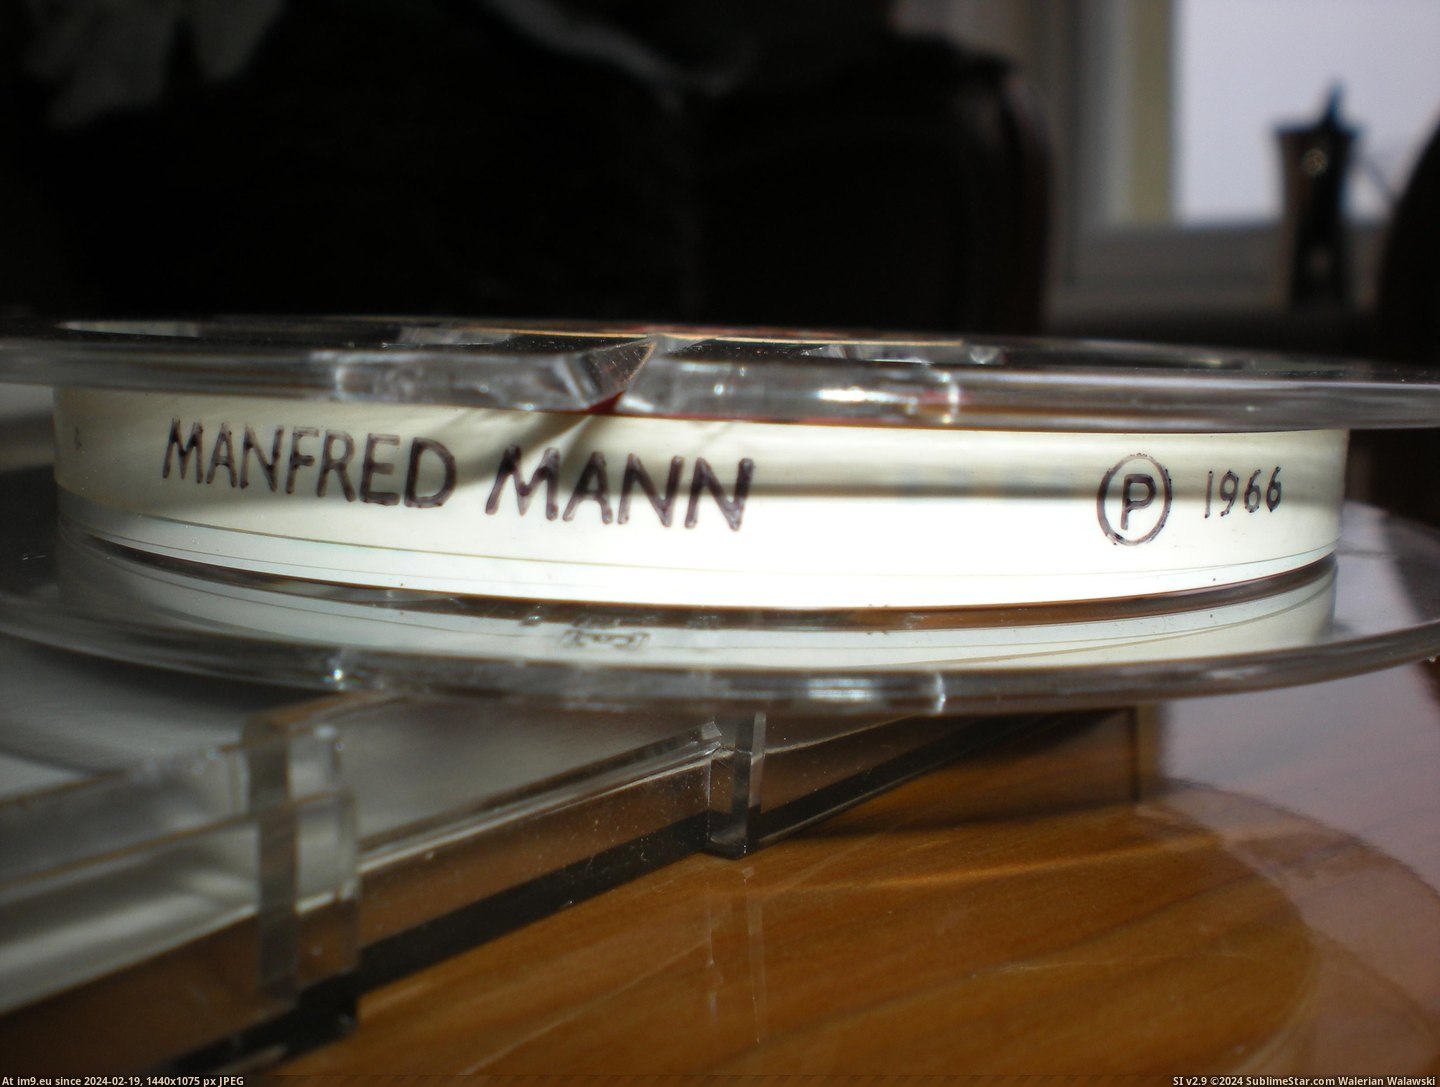 #Reel #Manfred #Mann Manfred Mann reel 4 Pic. (Obraz z album new 1))